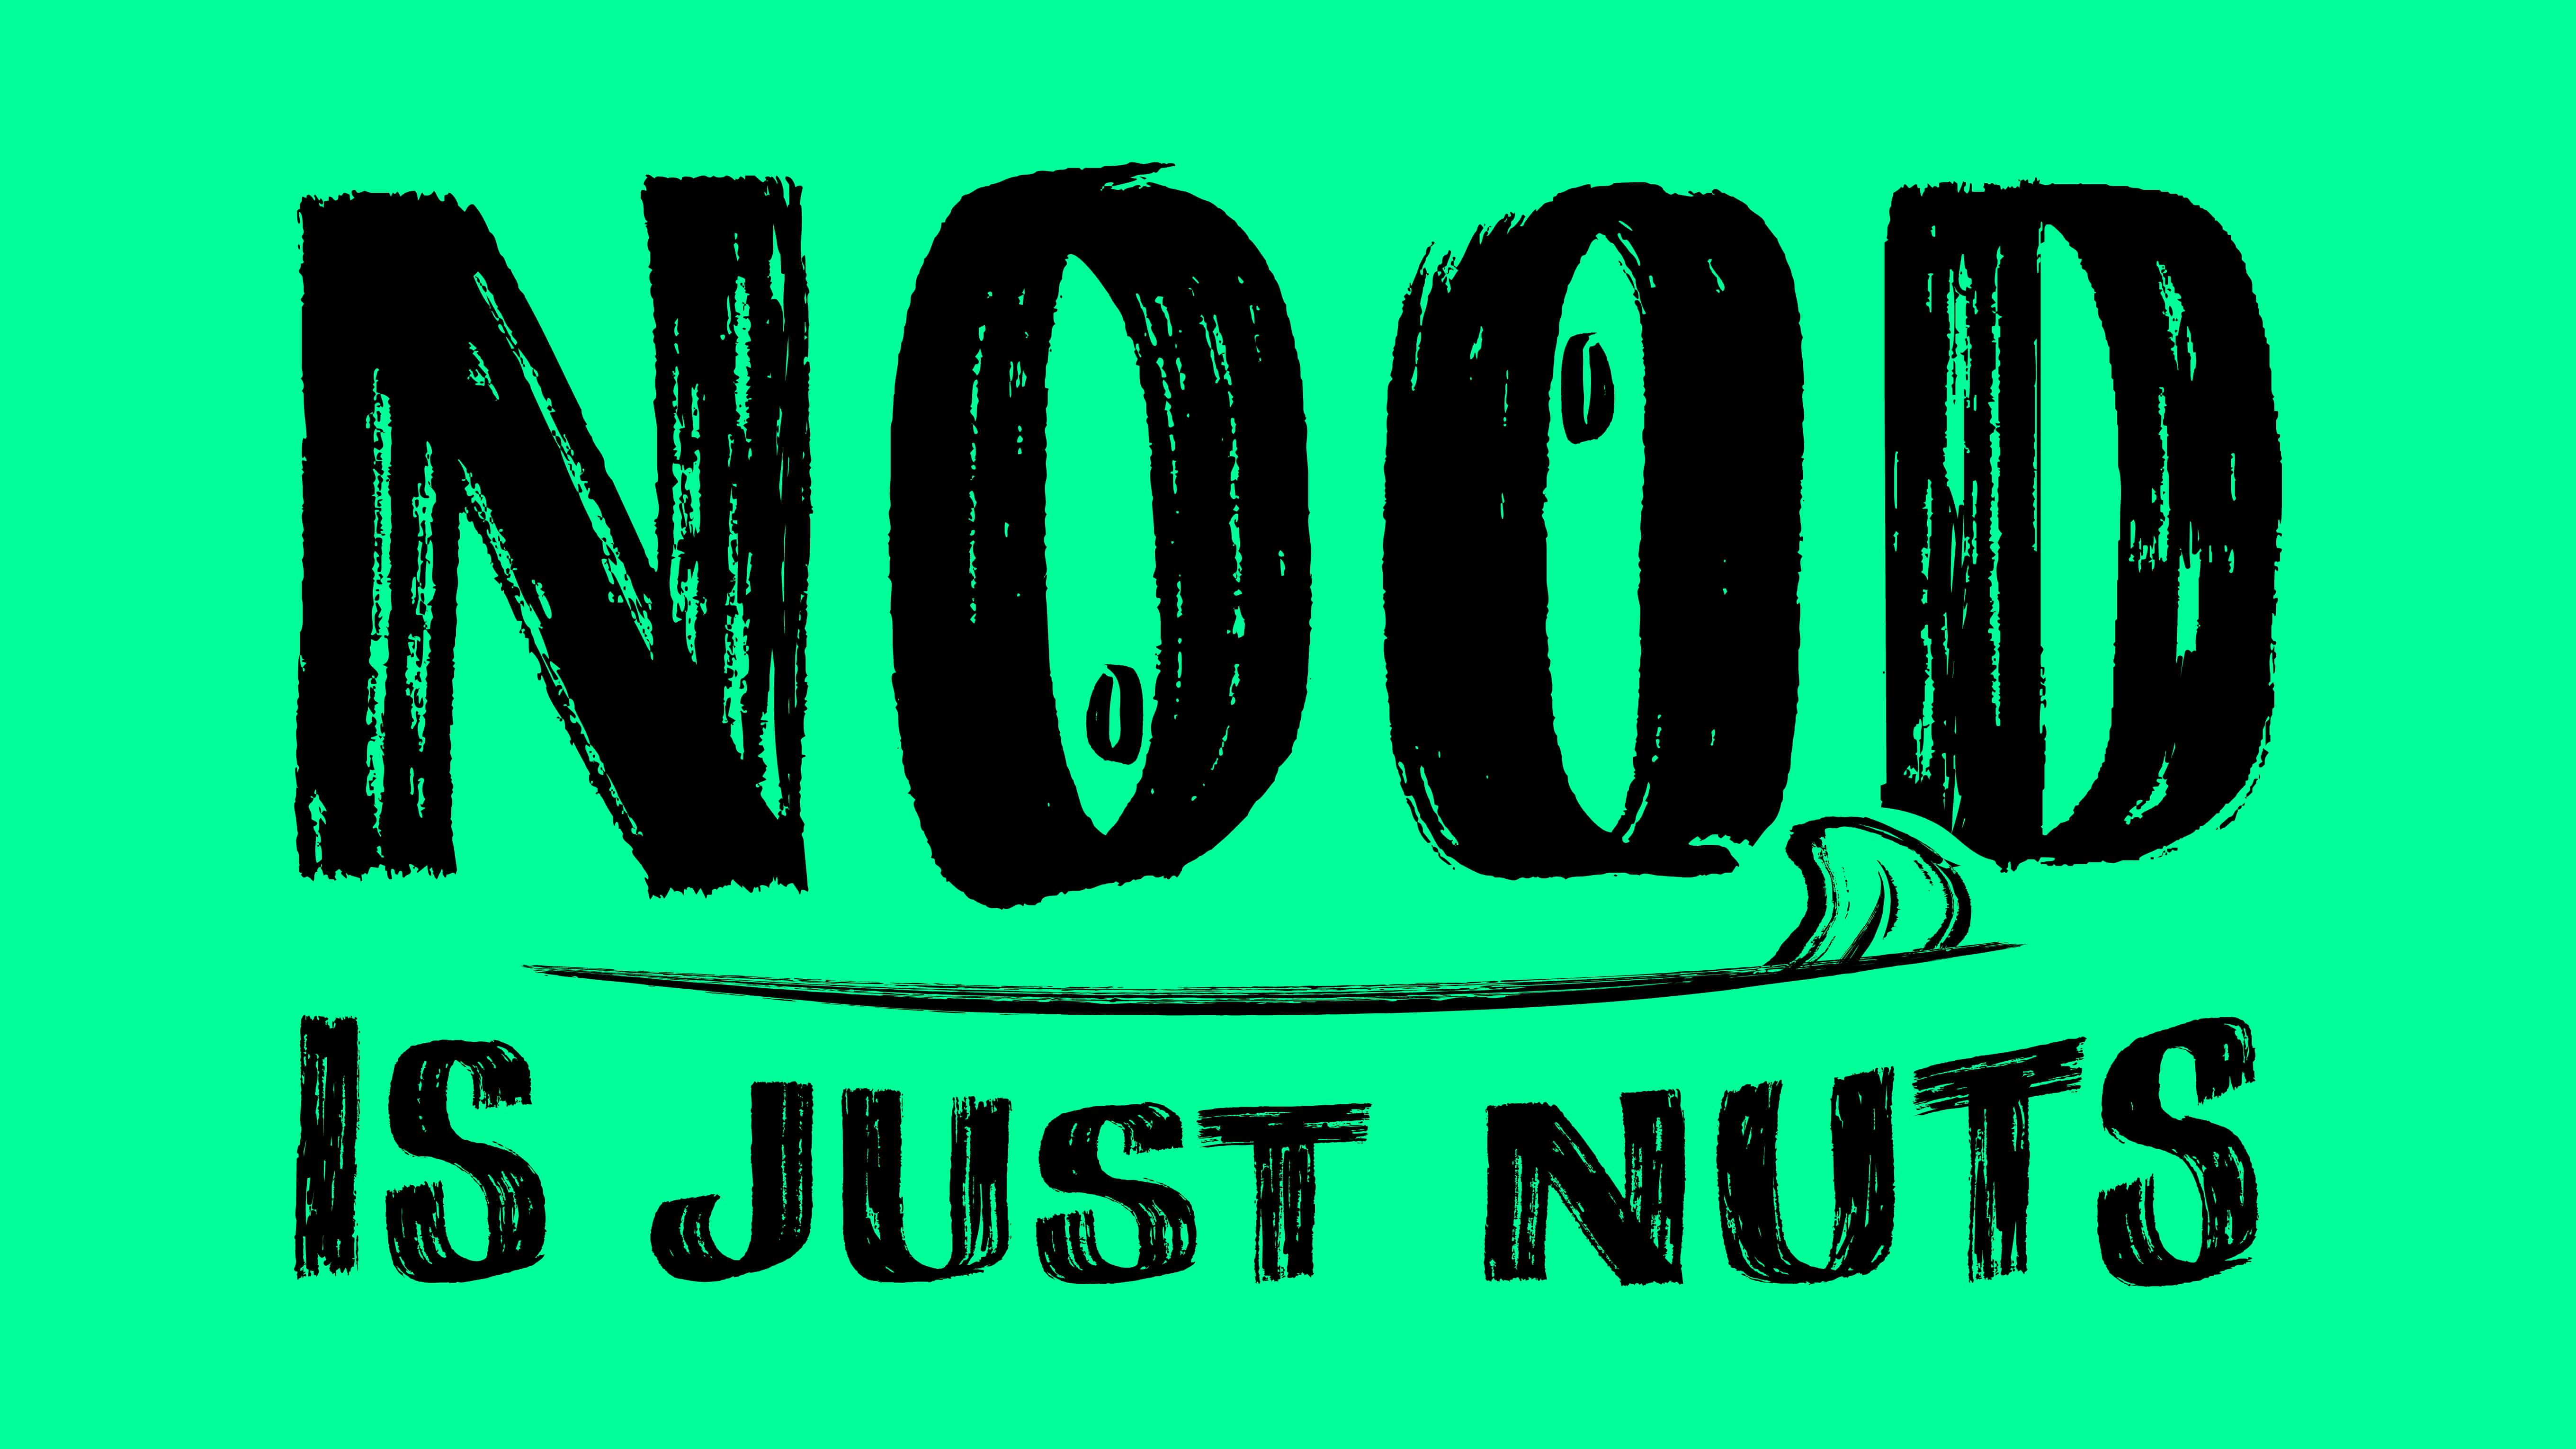 Nood Nut Butter’s Playful Branding by JansenHarris